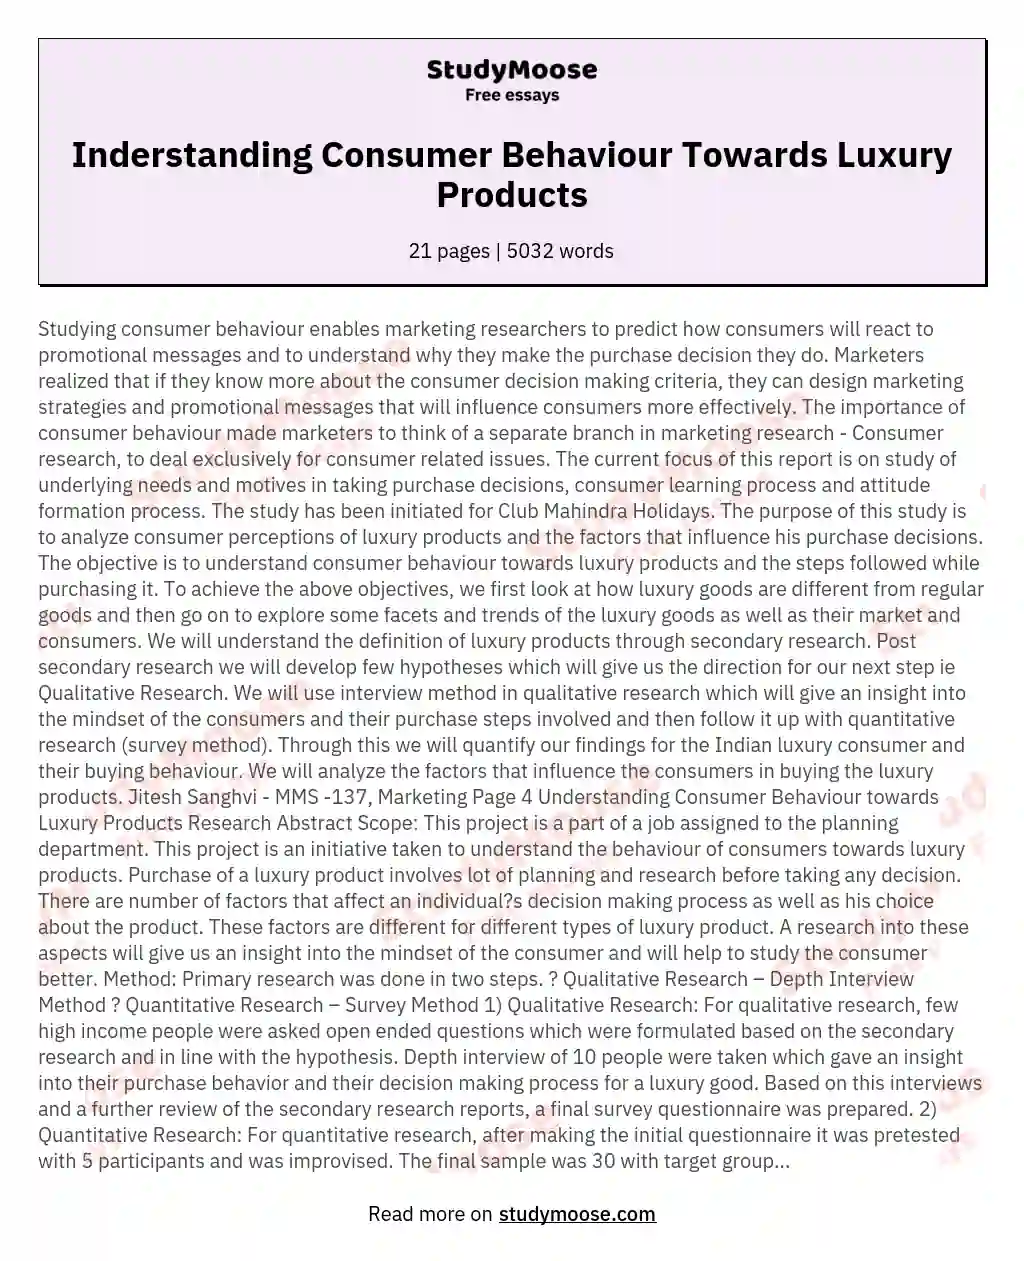 Inderstanding Consumer Behaviour Towards Luxury Products essay